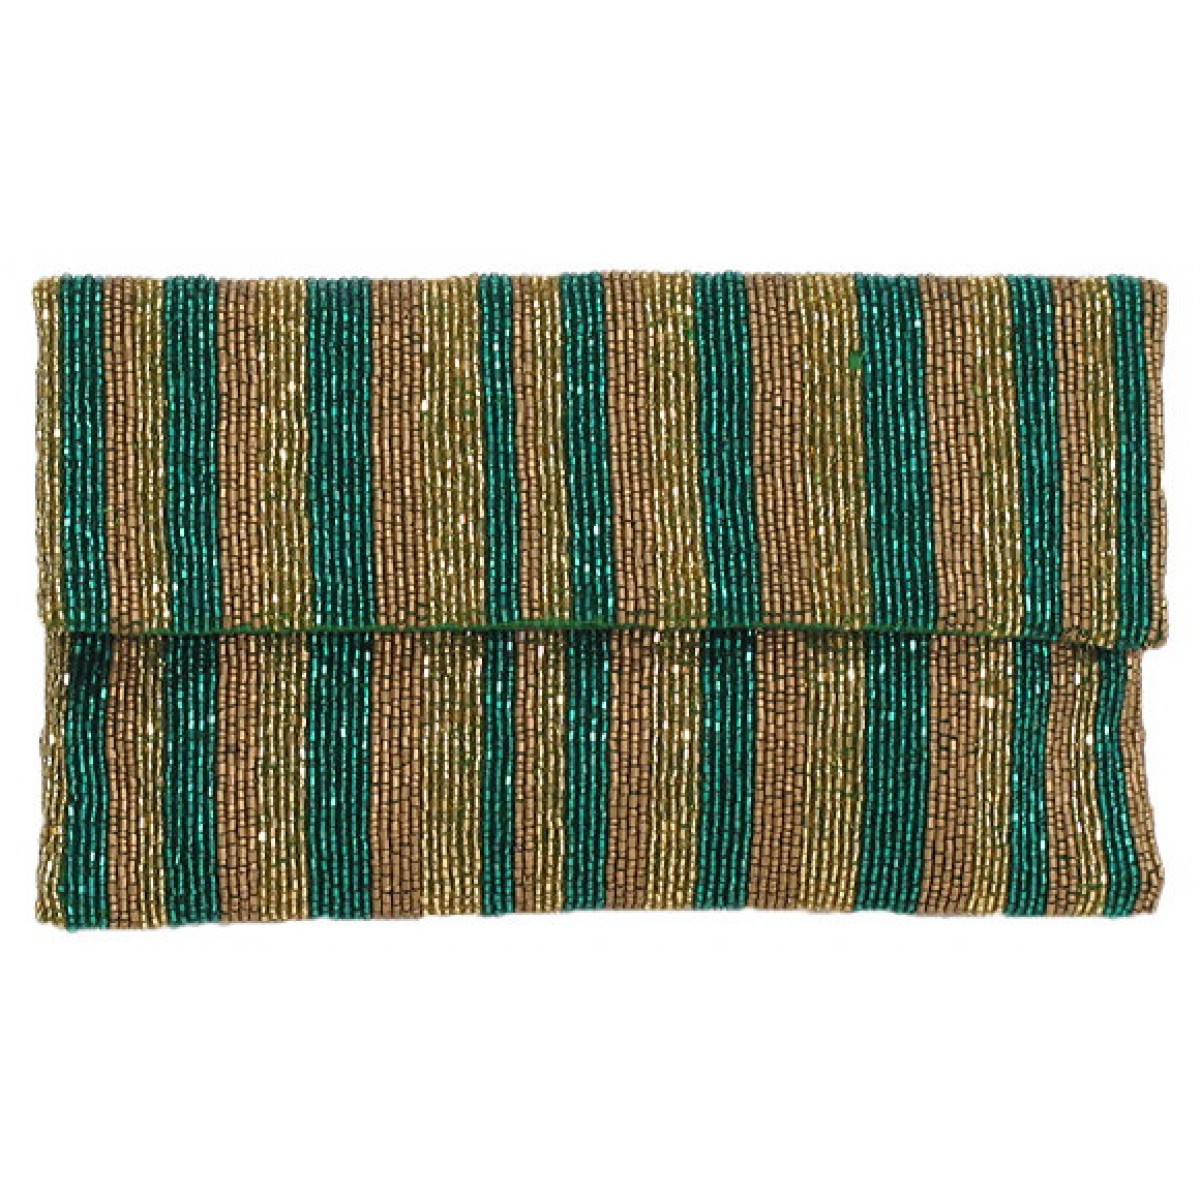 Clutch Stripes with Strap